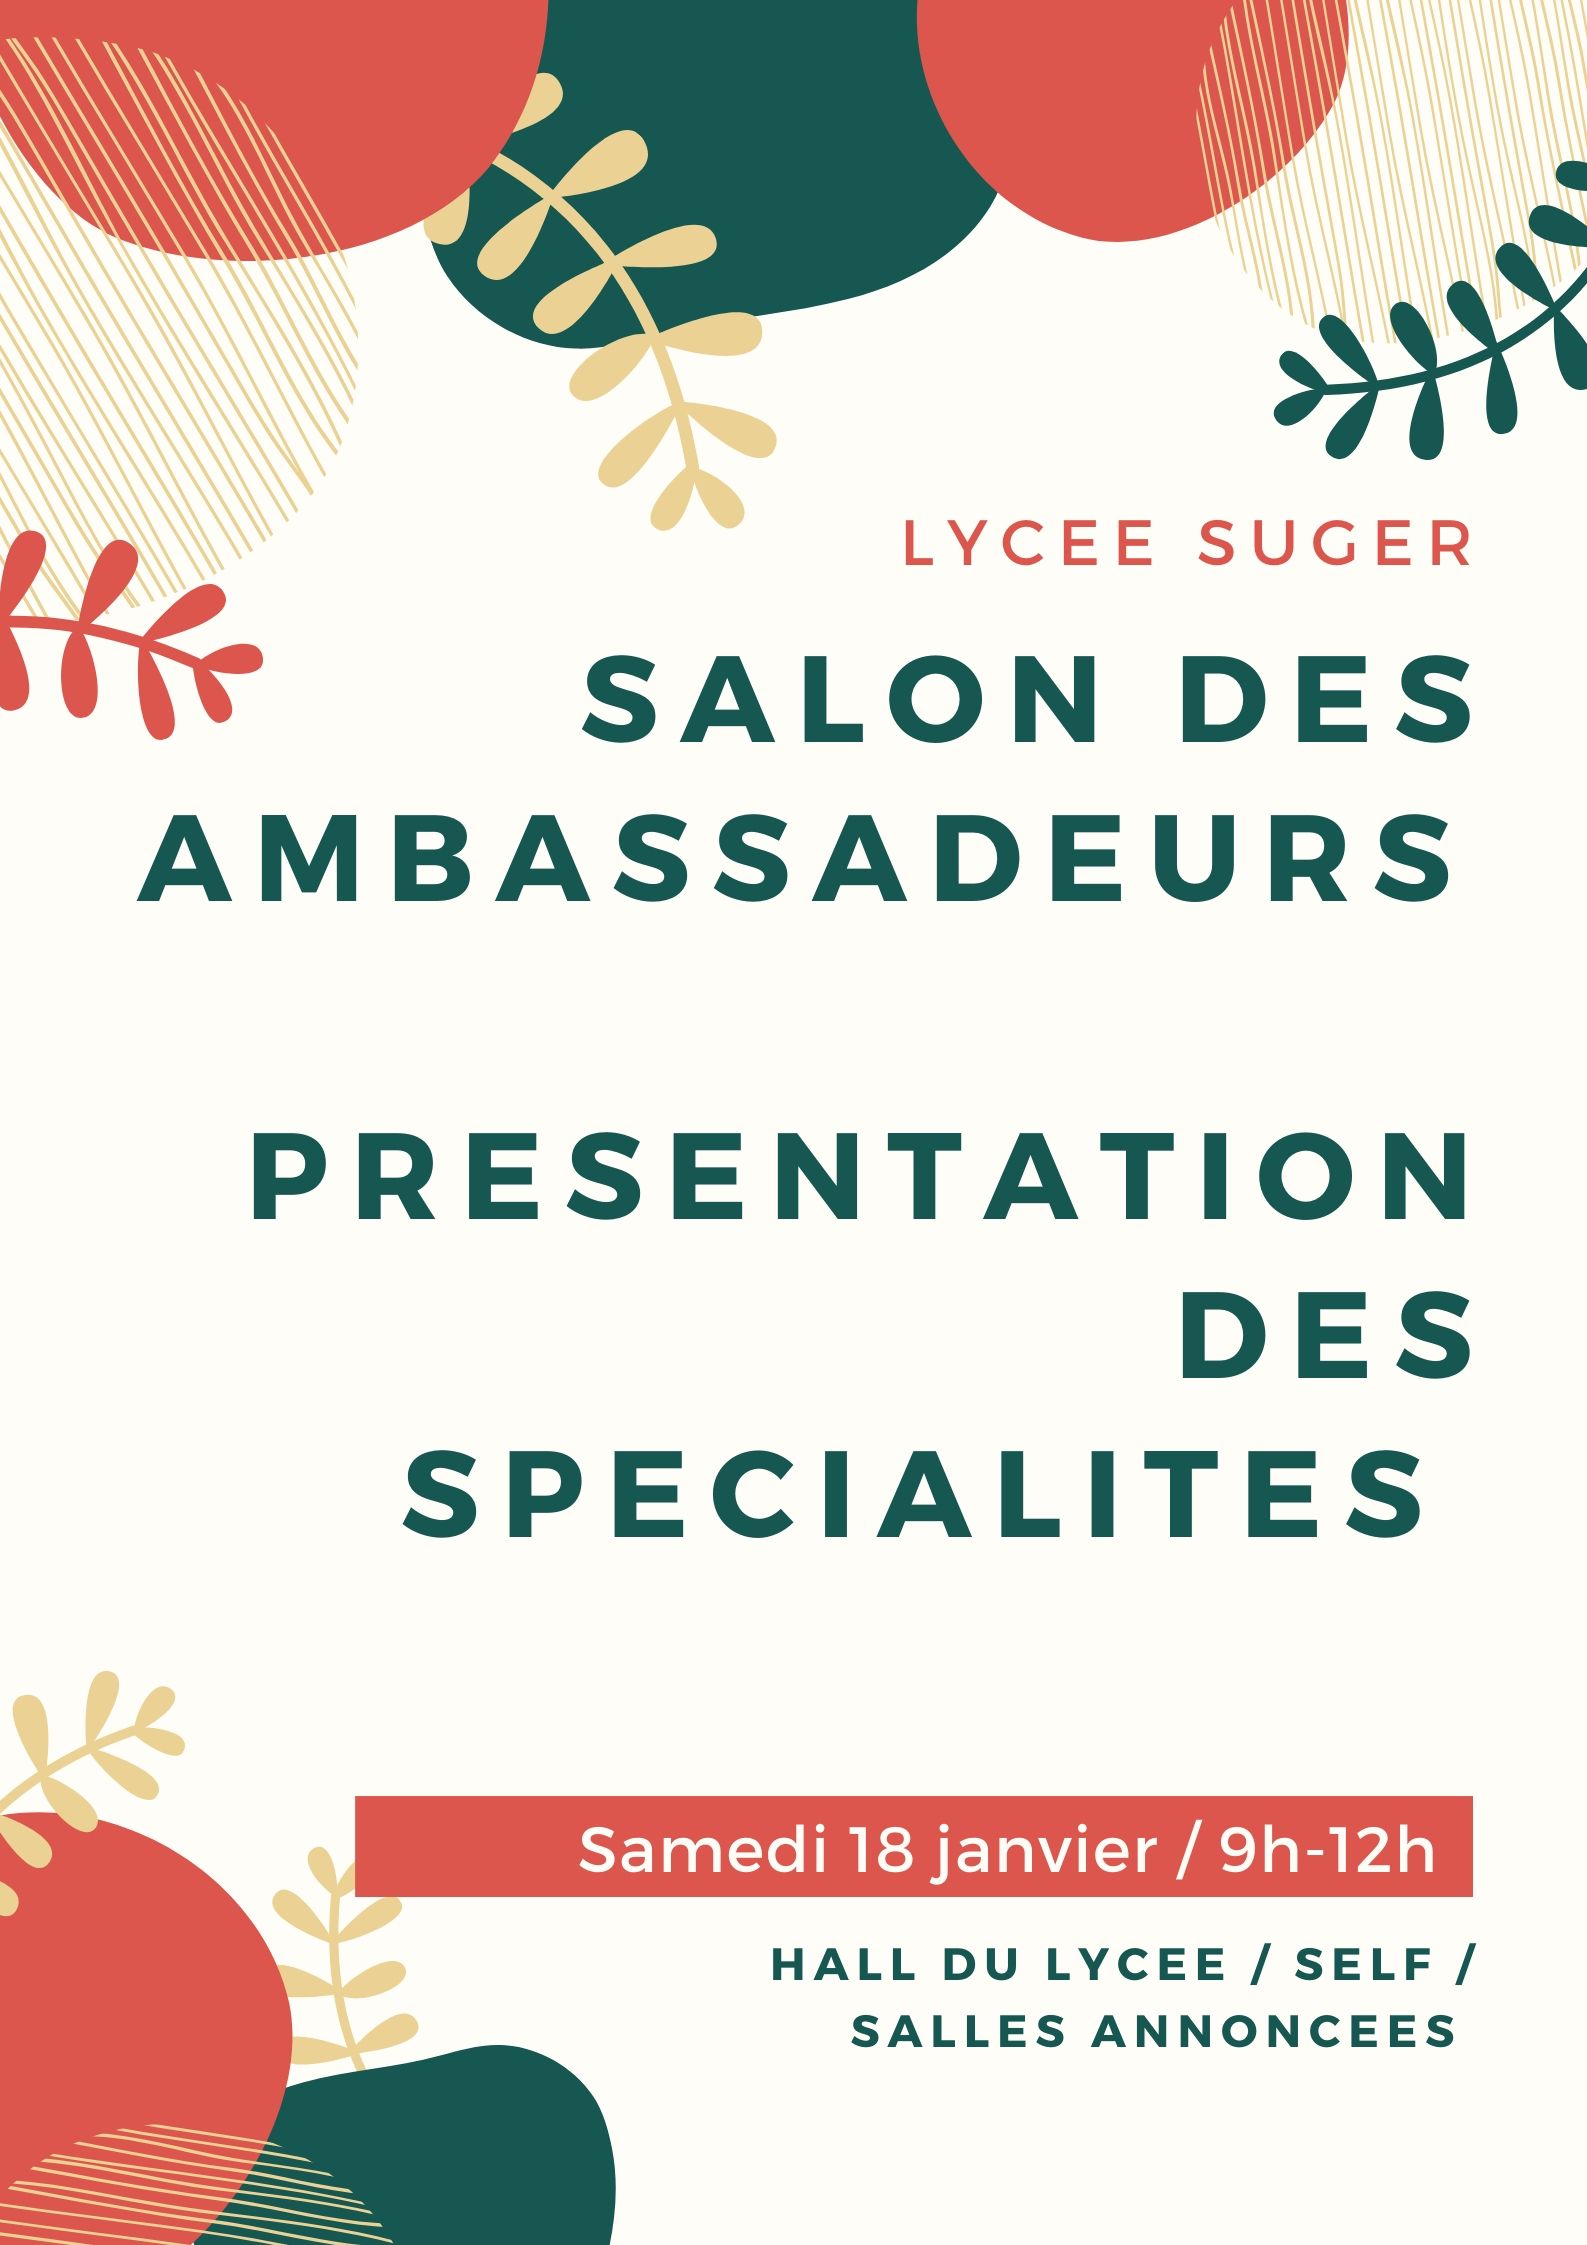 Salon des ambassadeurs / Présentation des spécialités – samedi 18 janvier